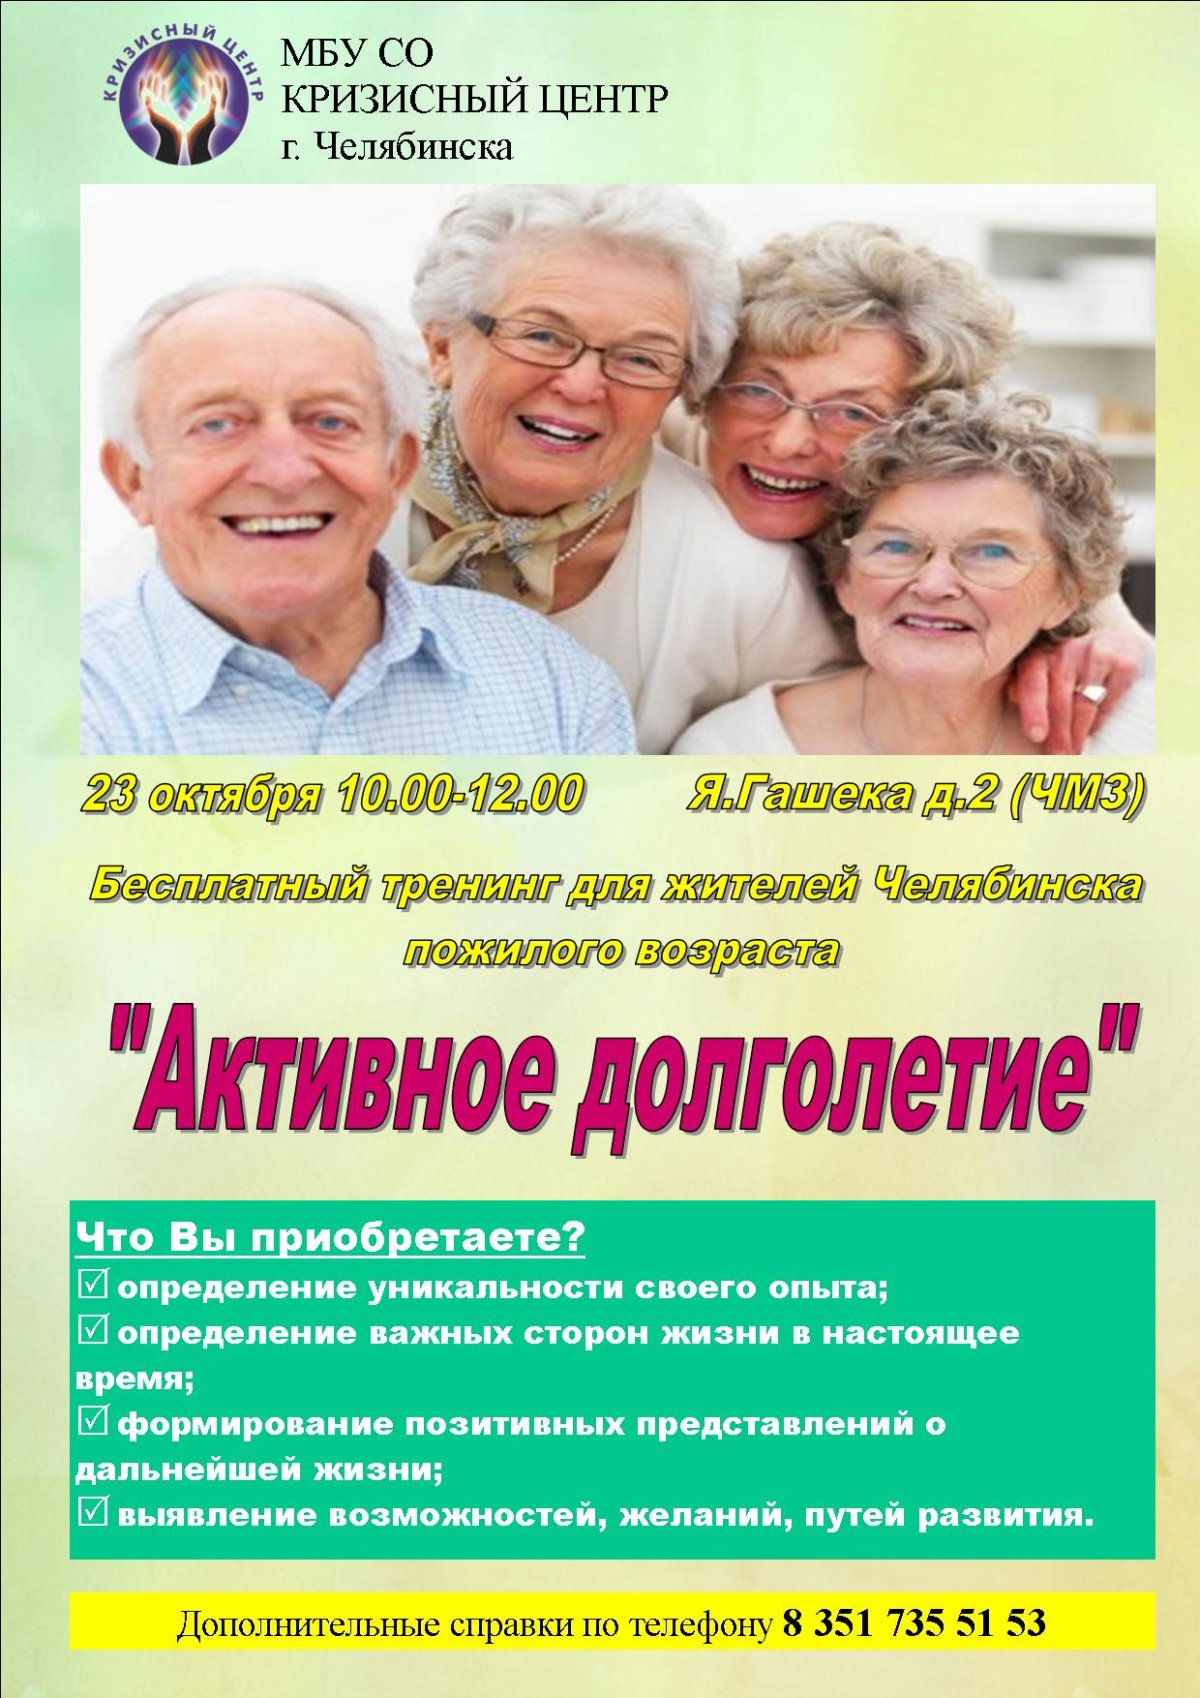 Долголетие контакты. Активное долголетие программа. Реклама ко Дню пожилых людей. Приглашение на активное долголетие. Приглашаем в активное долголетие.